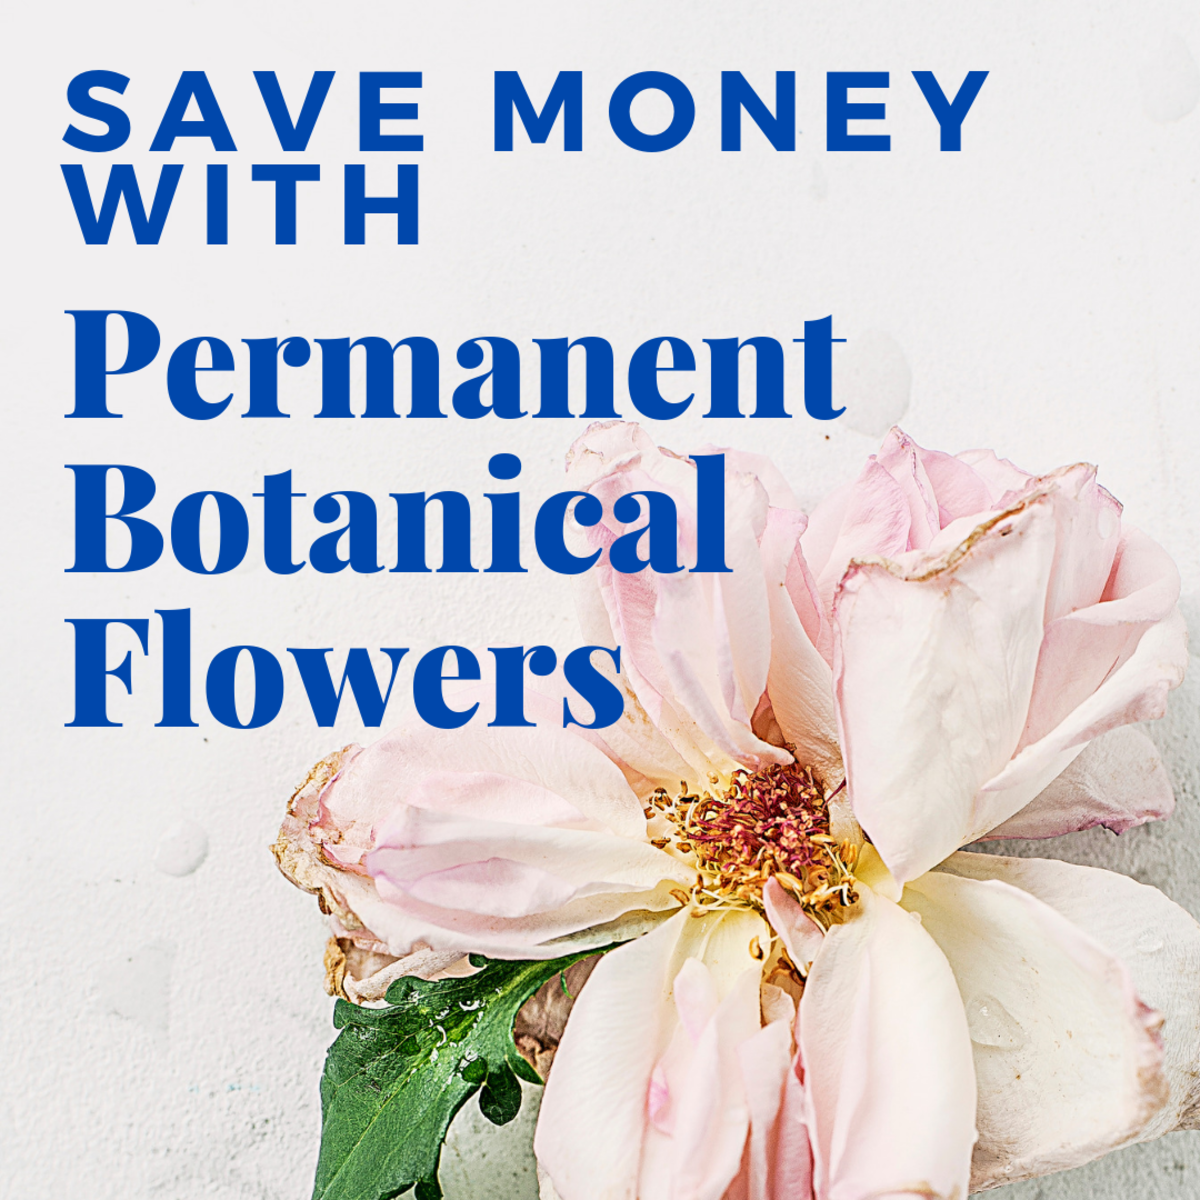 Permanent Botanical Flower Tips